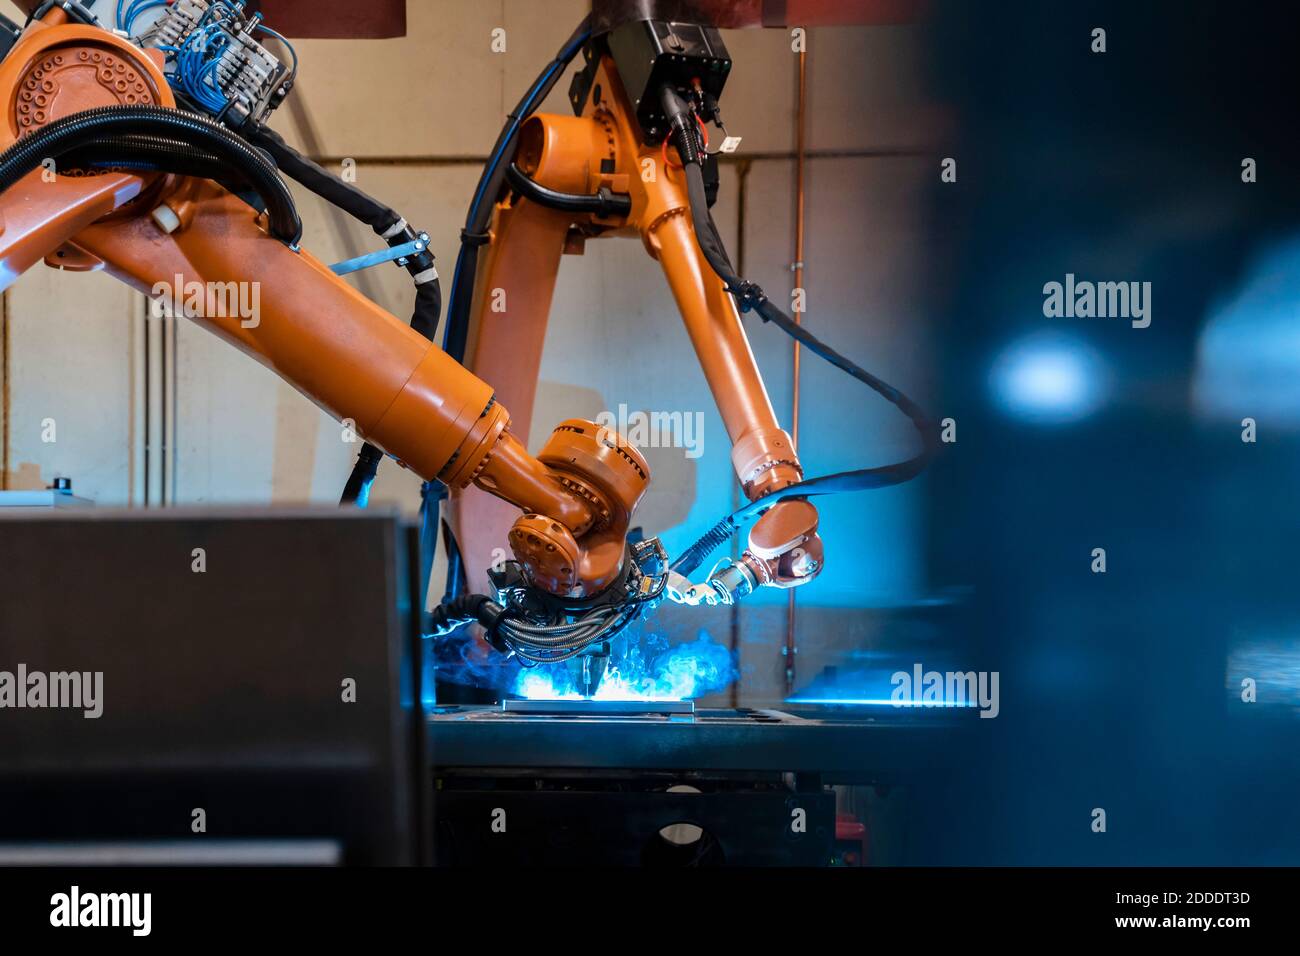 Fabrication de bras robotisés de couleur orange dans une usine industrielle Banque D'Images